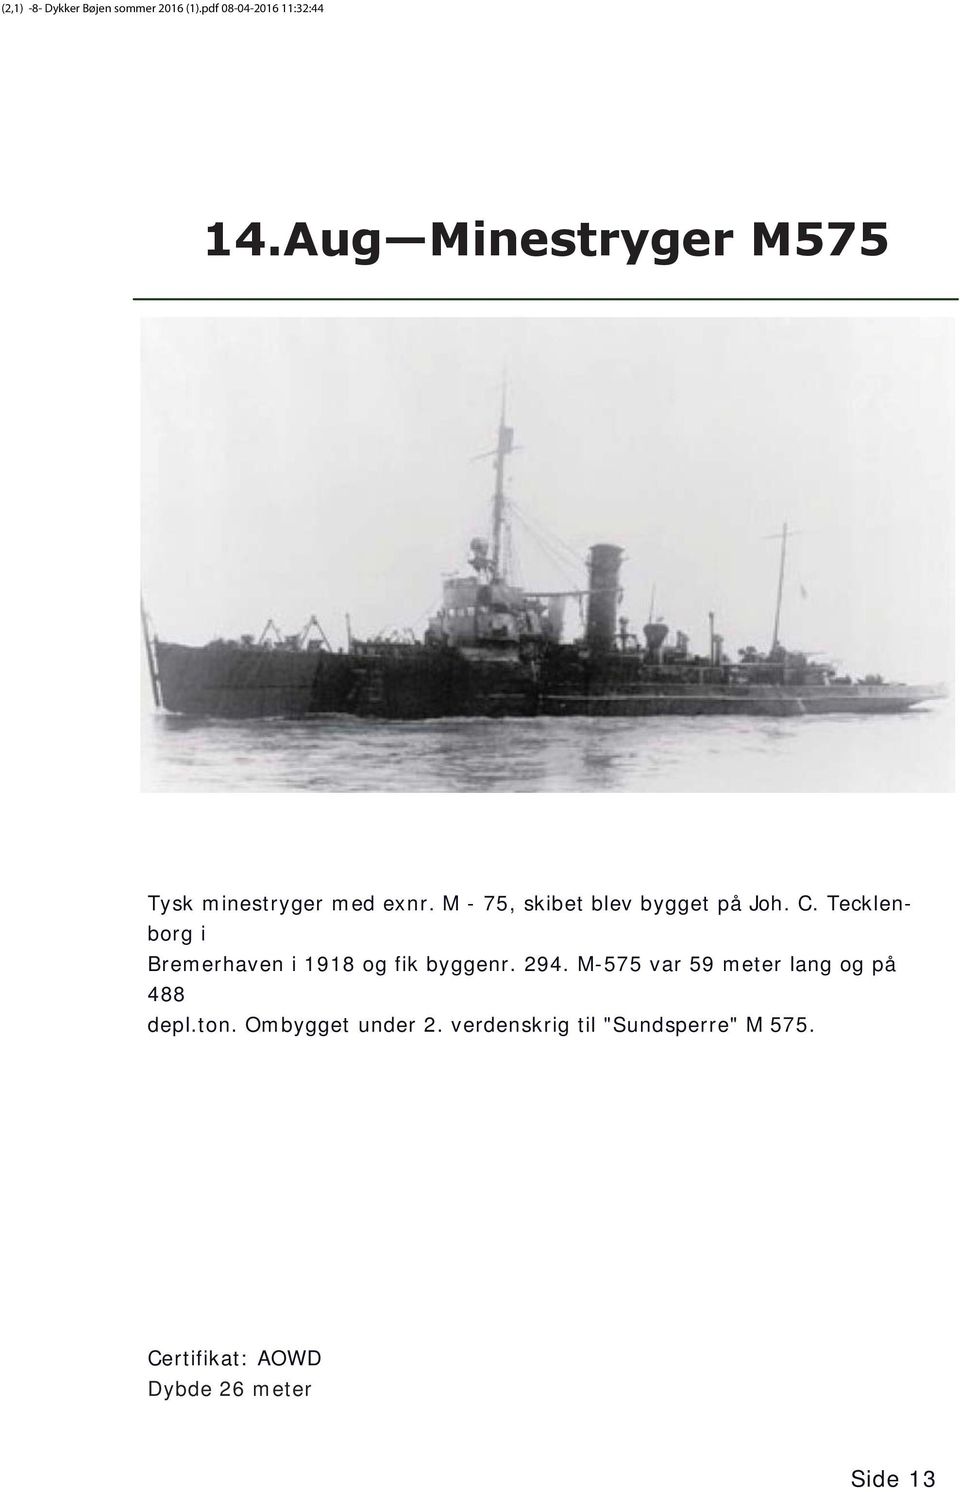 Tecklenborg i Bremerhaven i 1918 og fik byggenr. 294.